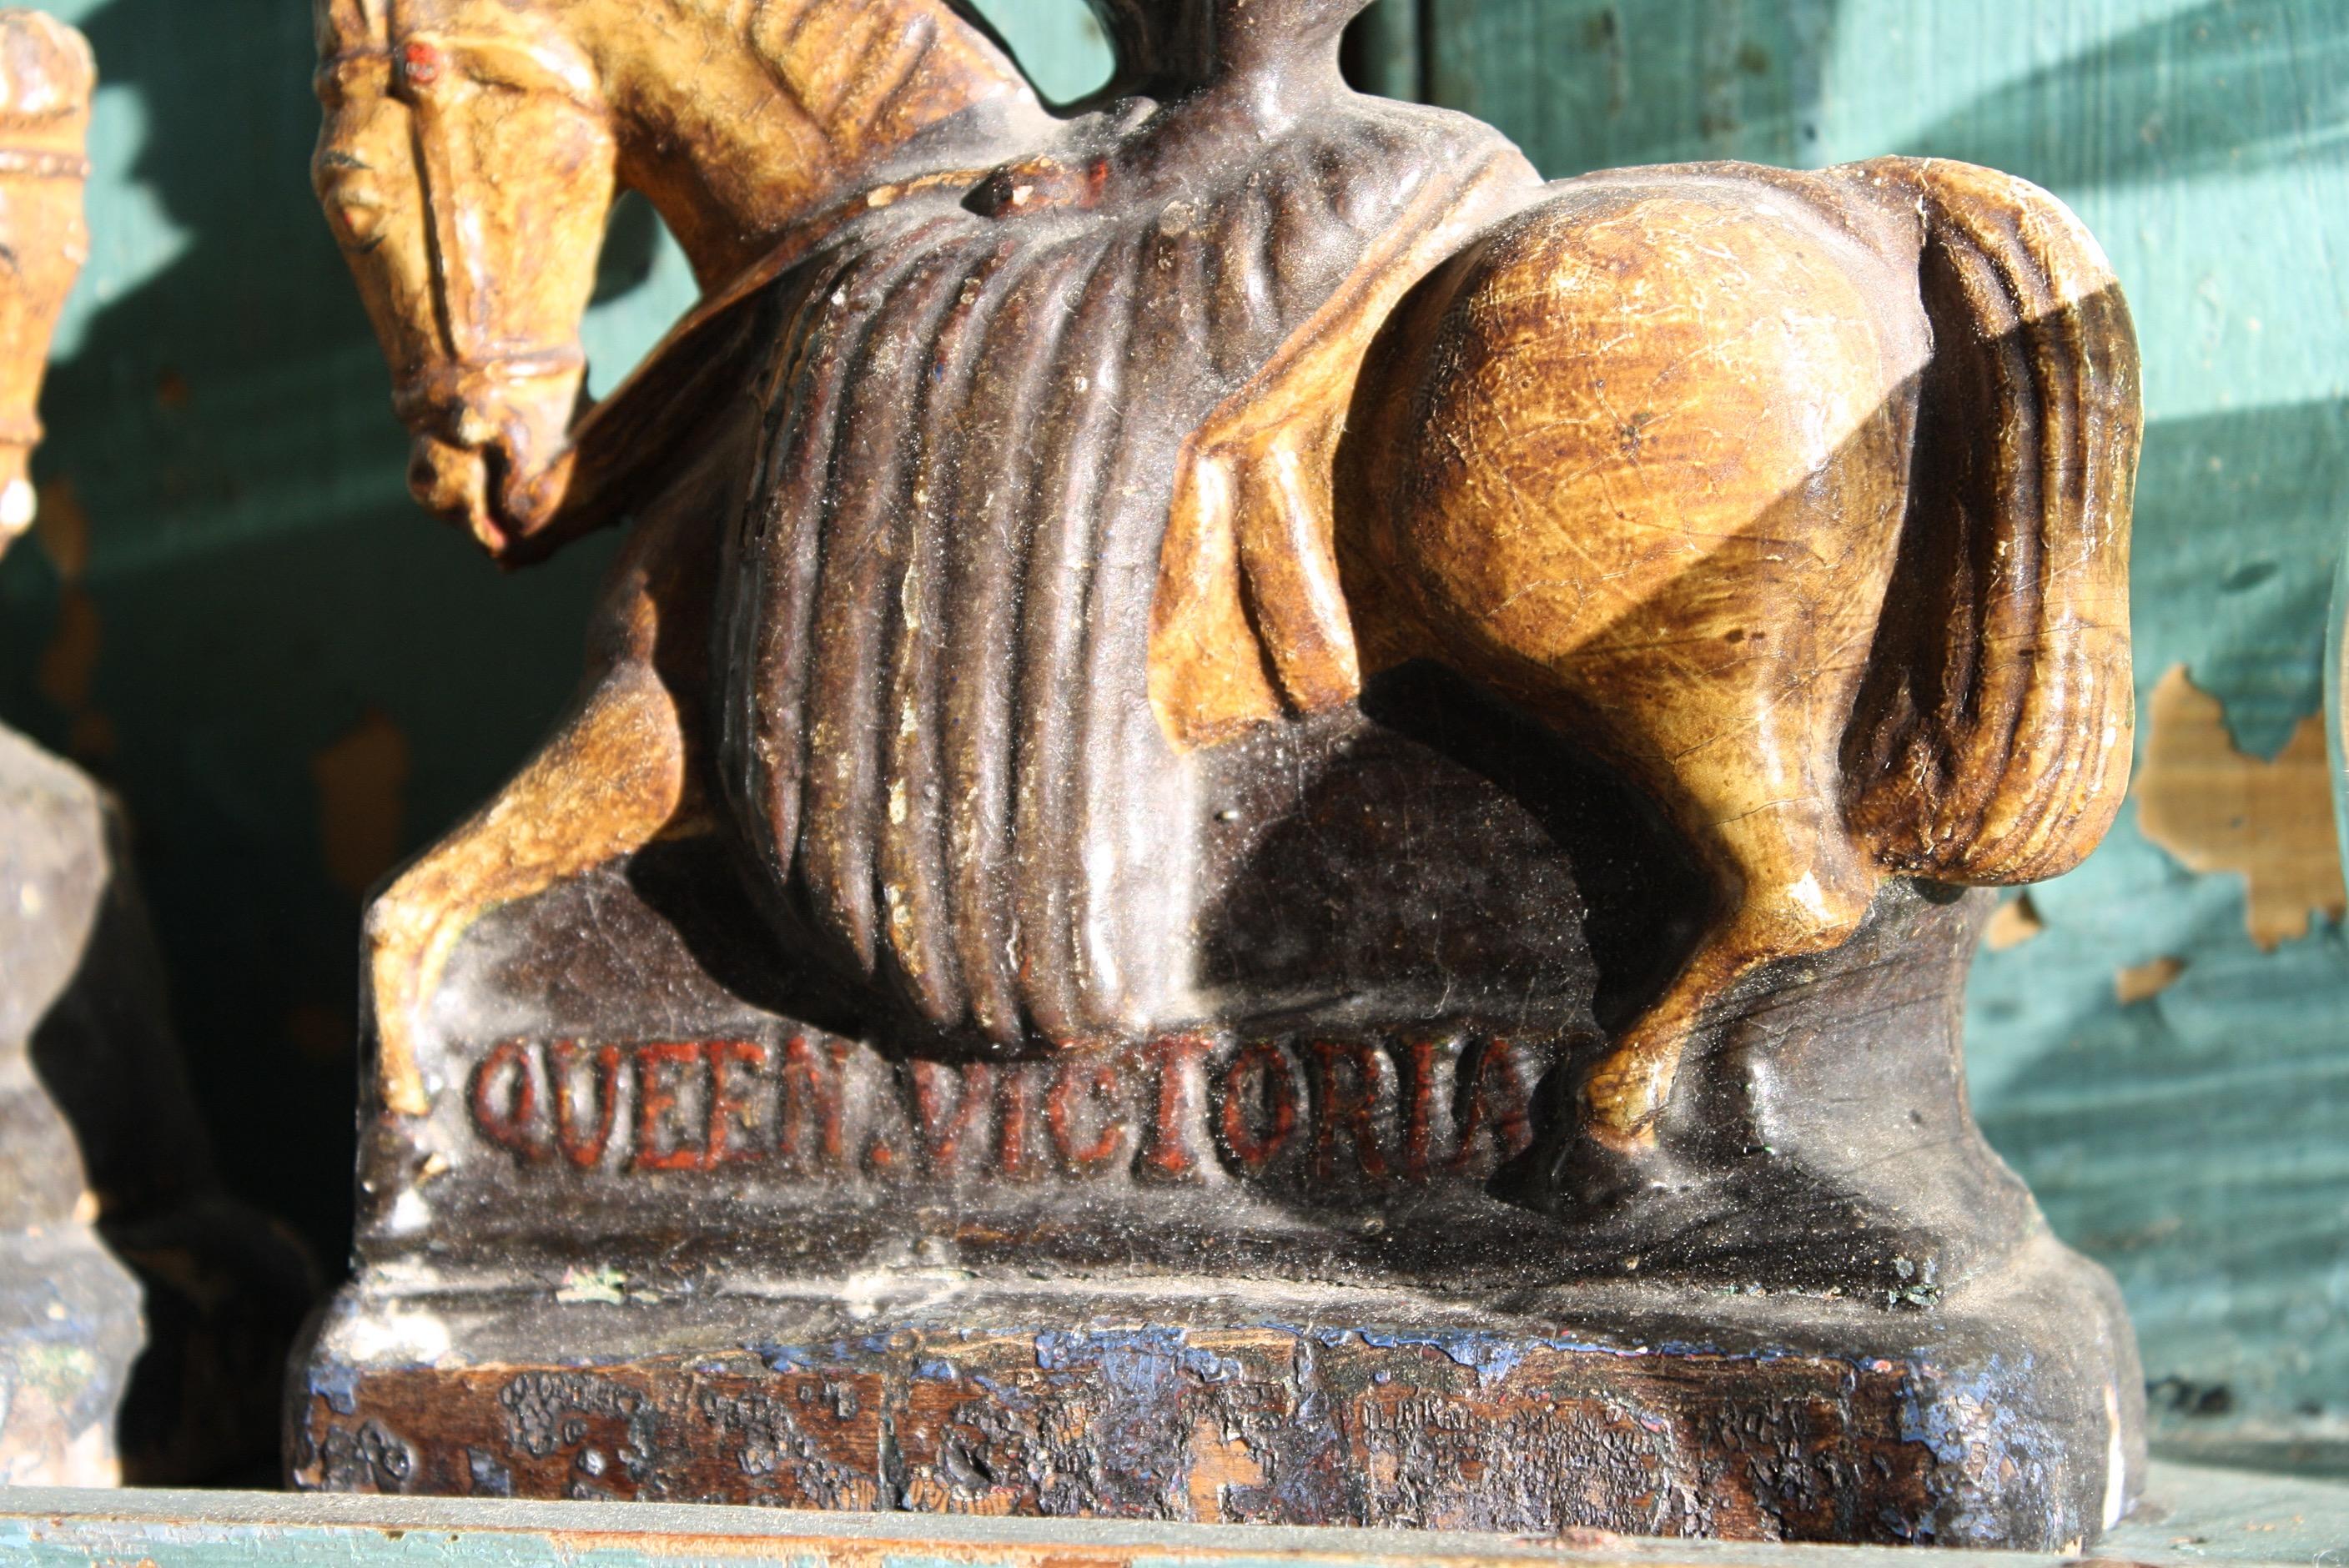 Paire de figurines en bois sculpté et peint en polychrome représentant la reine Victoria et le prince Albert à cheval, datant du milieu du 19e siècle, avec décoration peinte et titre sur les faces avant. 

Bon état d'origine avec quelques écailles